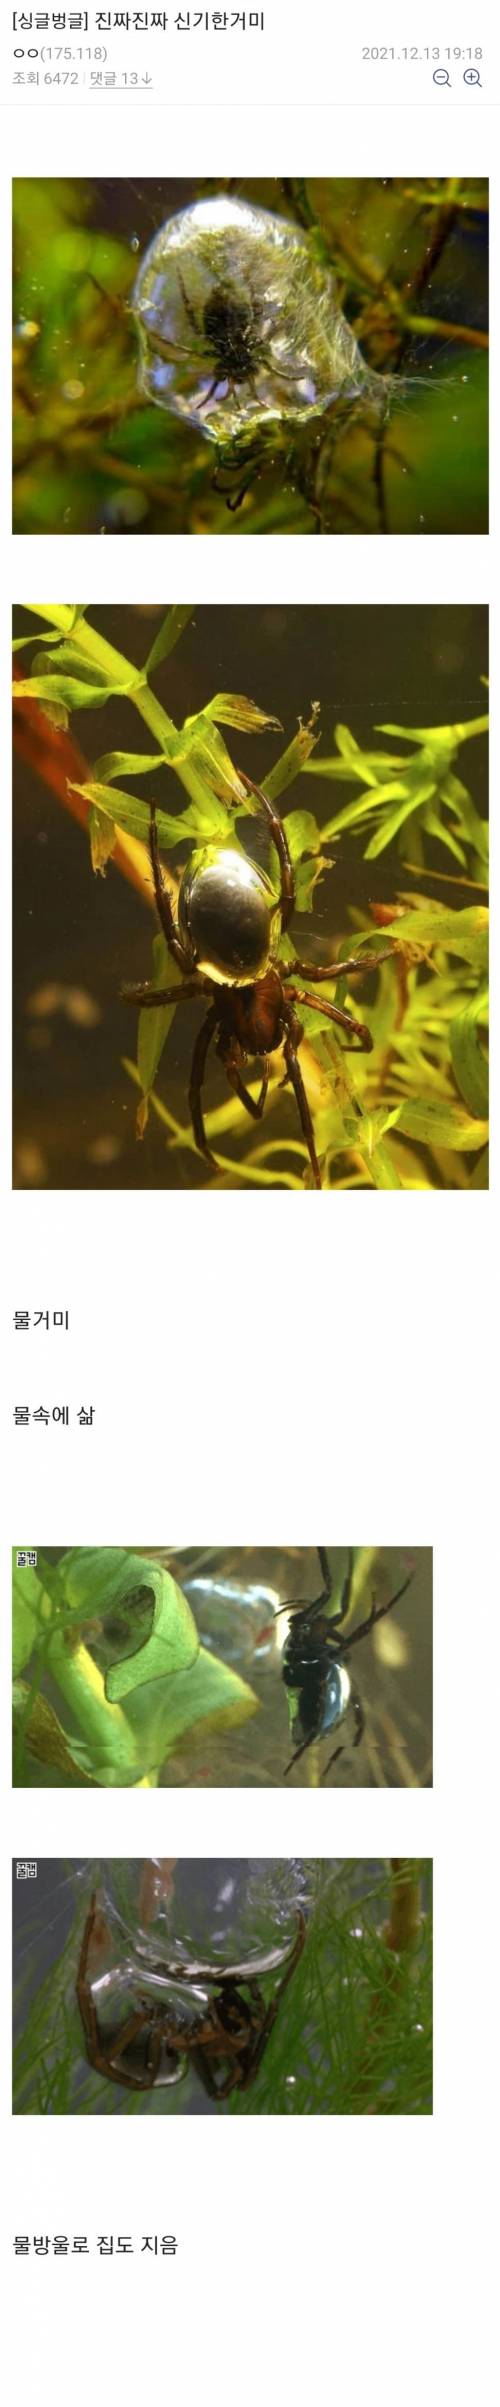 [거미주의] 진짜 신기하고 귀여운 거미